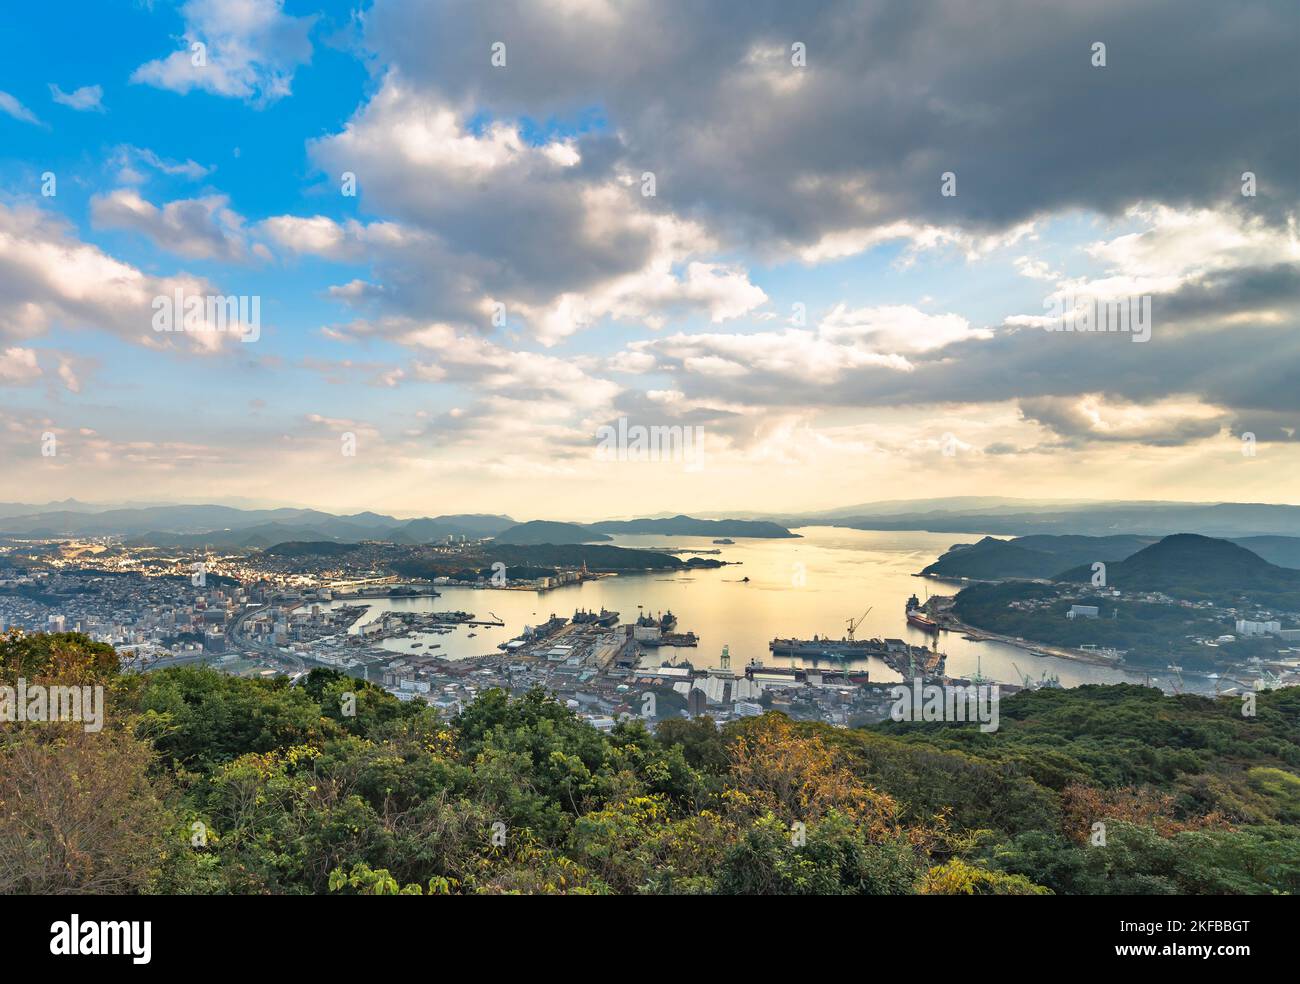 kyushu, giappone - Dicembre 09 2021: Vista dall'alto dal ponte del punto di osservazione di Yumiharidake che si affaccia sul cantiere navale di Sasebo con il Kujukus Foto Stock